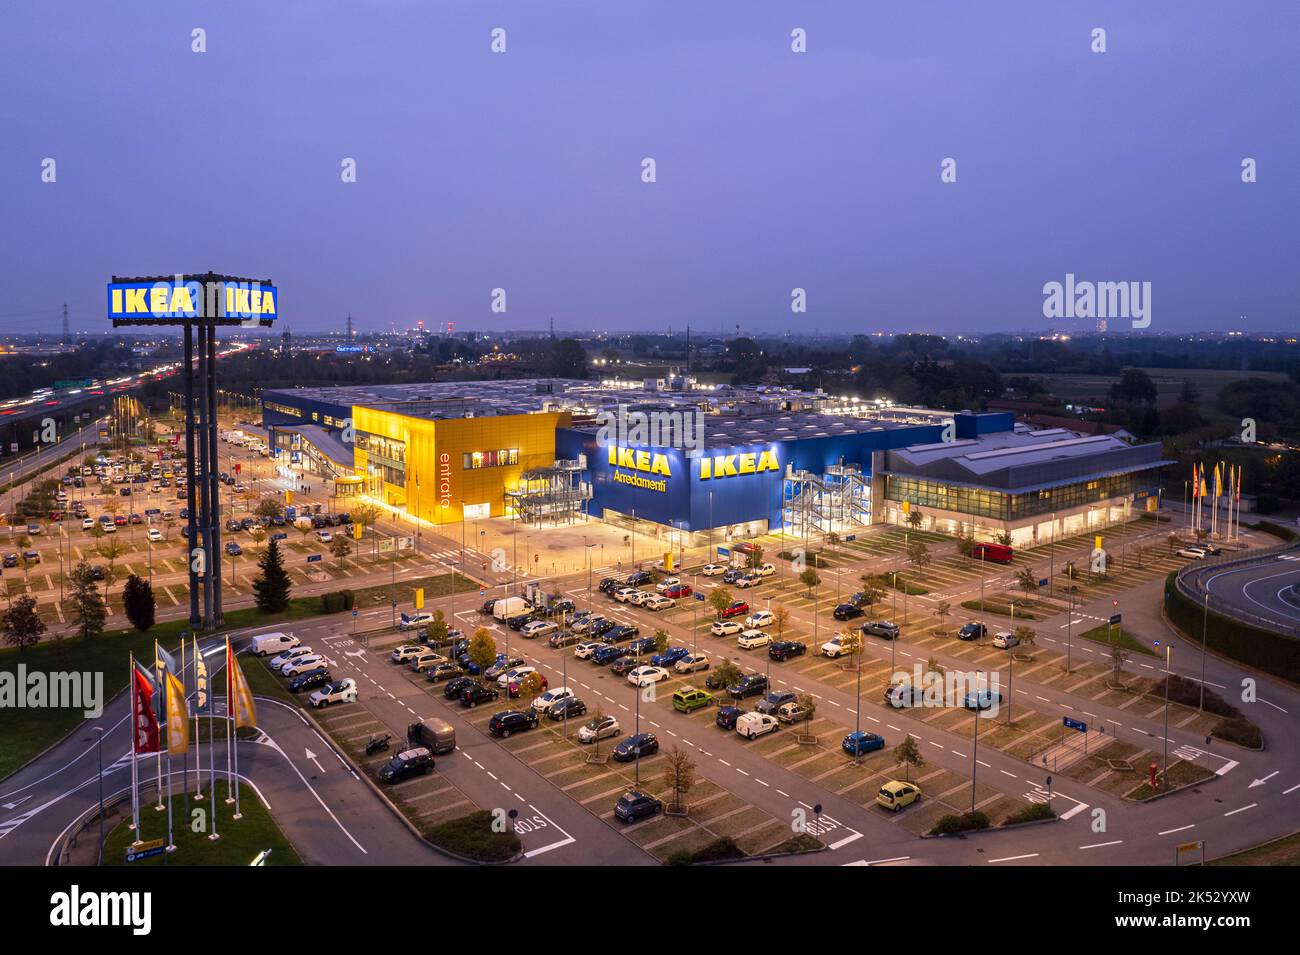 Vue aérienne du magasin Ikea avec places de parking, ambiance nocturne. Turin, Italie - octobre 2022 Banque D'Images